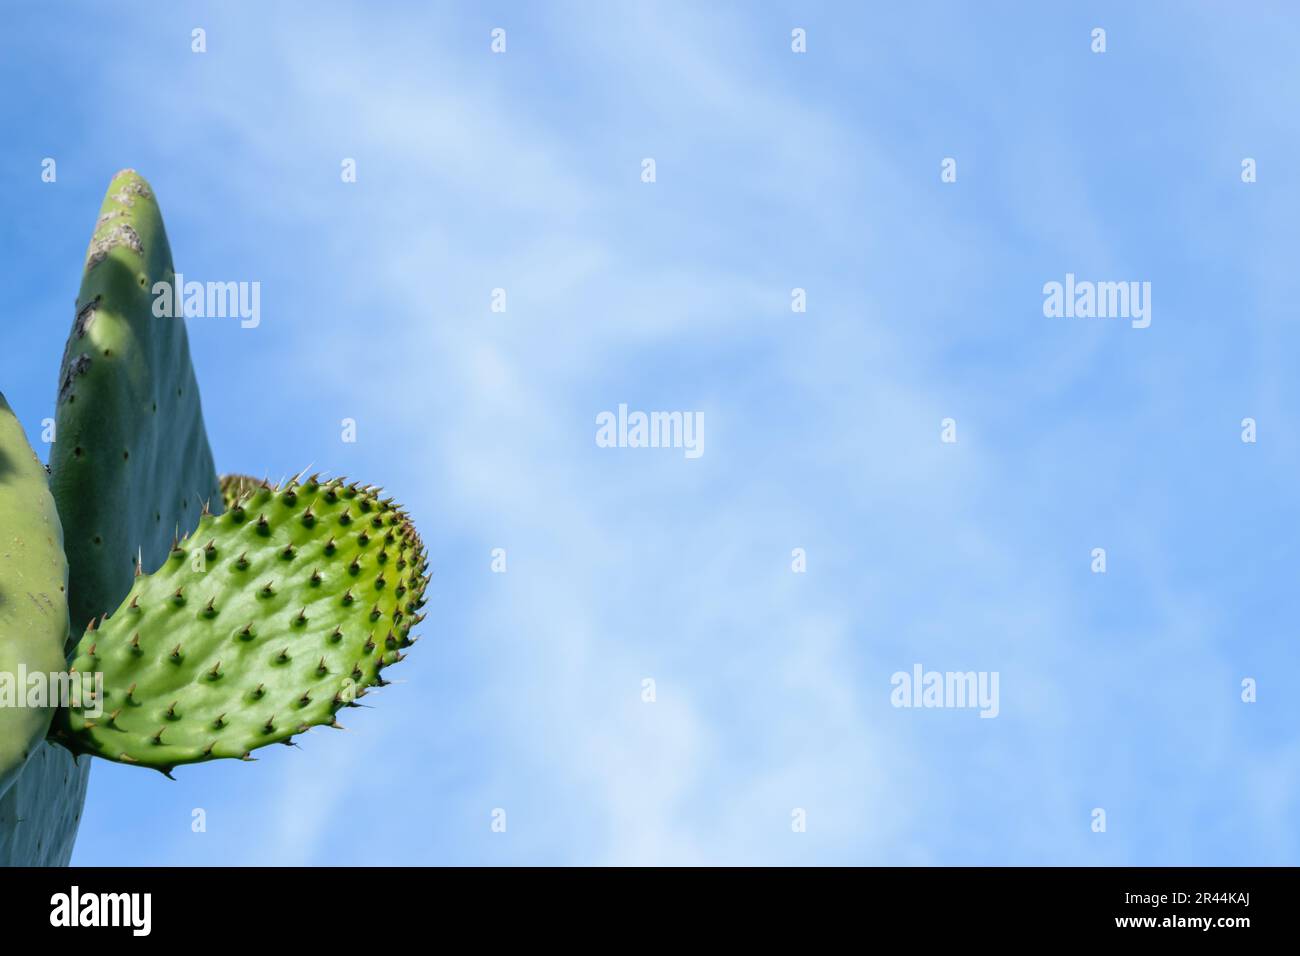 Bild von Kaktuspflanzen in gutem Wachstum mit blauem, klarem Himmelshintergrund Stockfoto